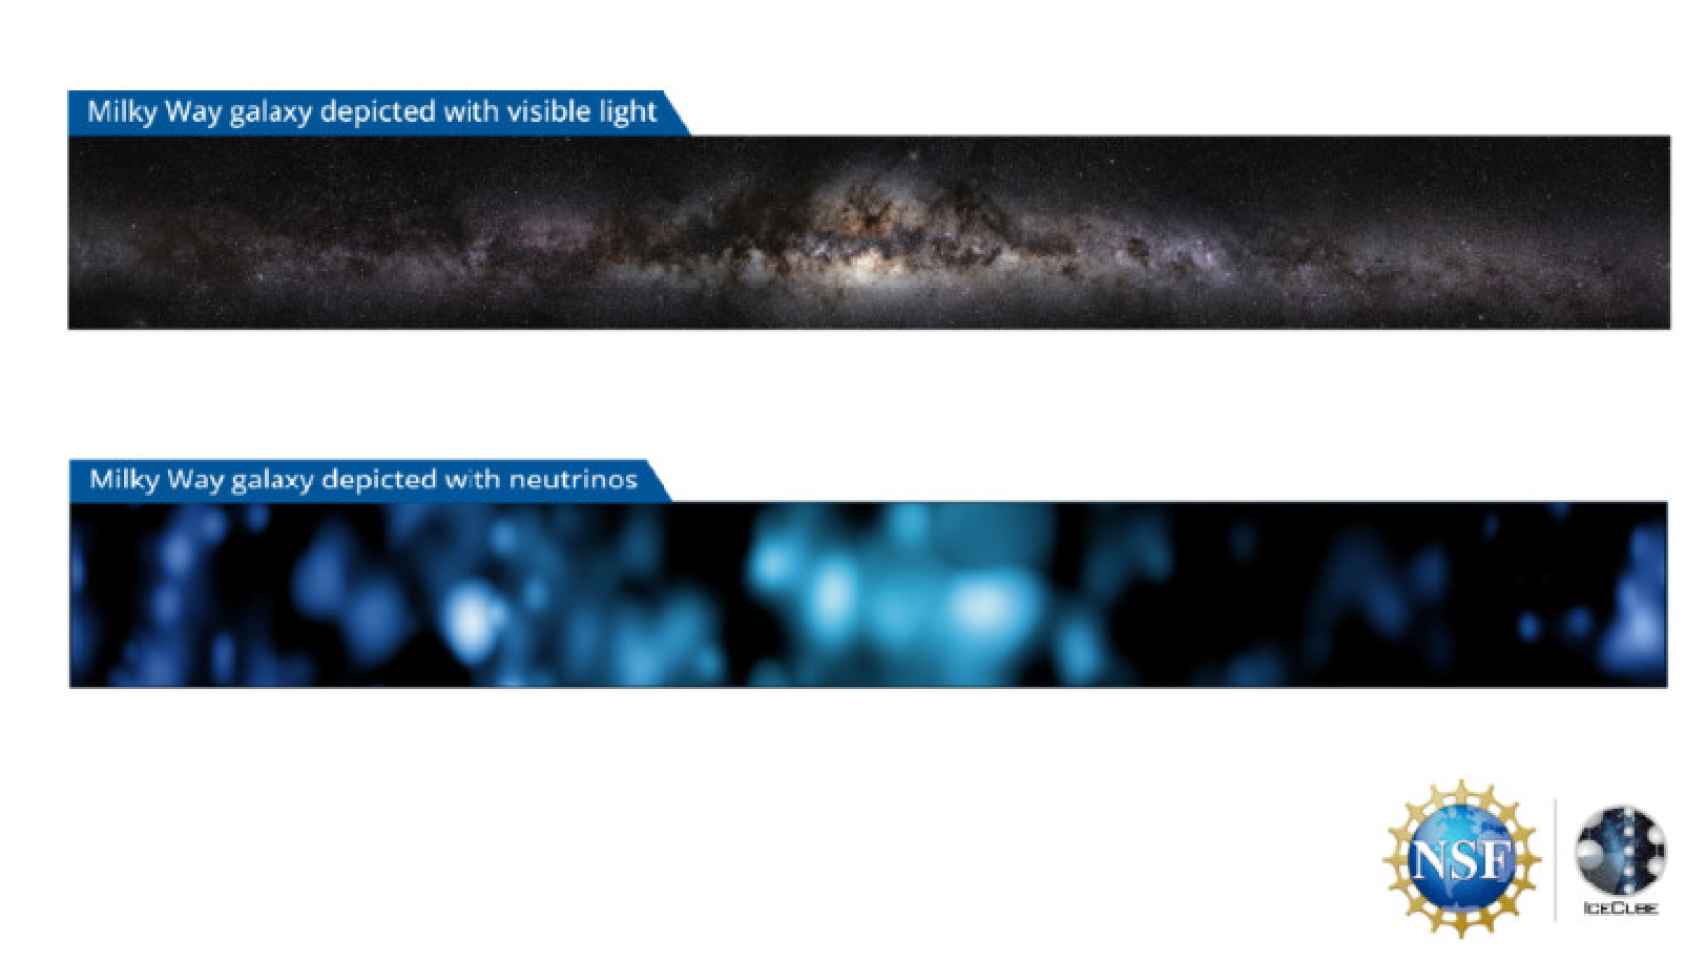 Imagen de la Vía Láctea a partir de luz visible (arriba) y a partir de neutrinos (abajo).